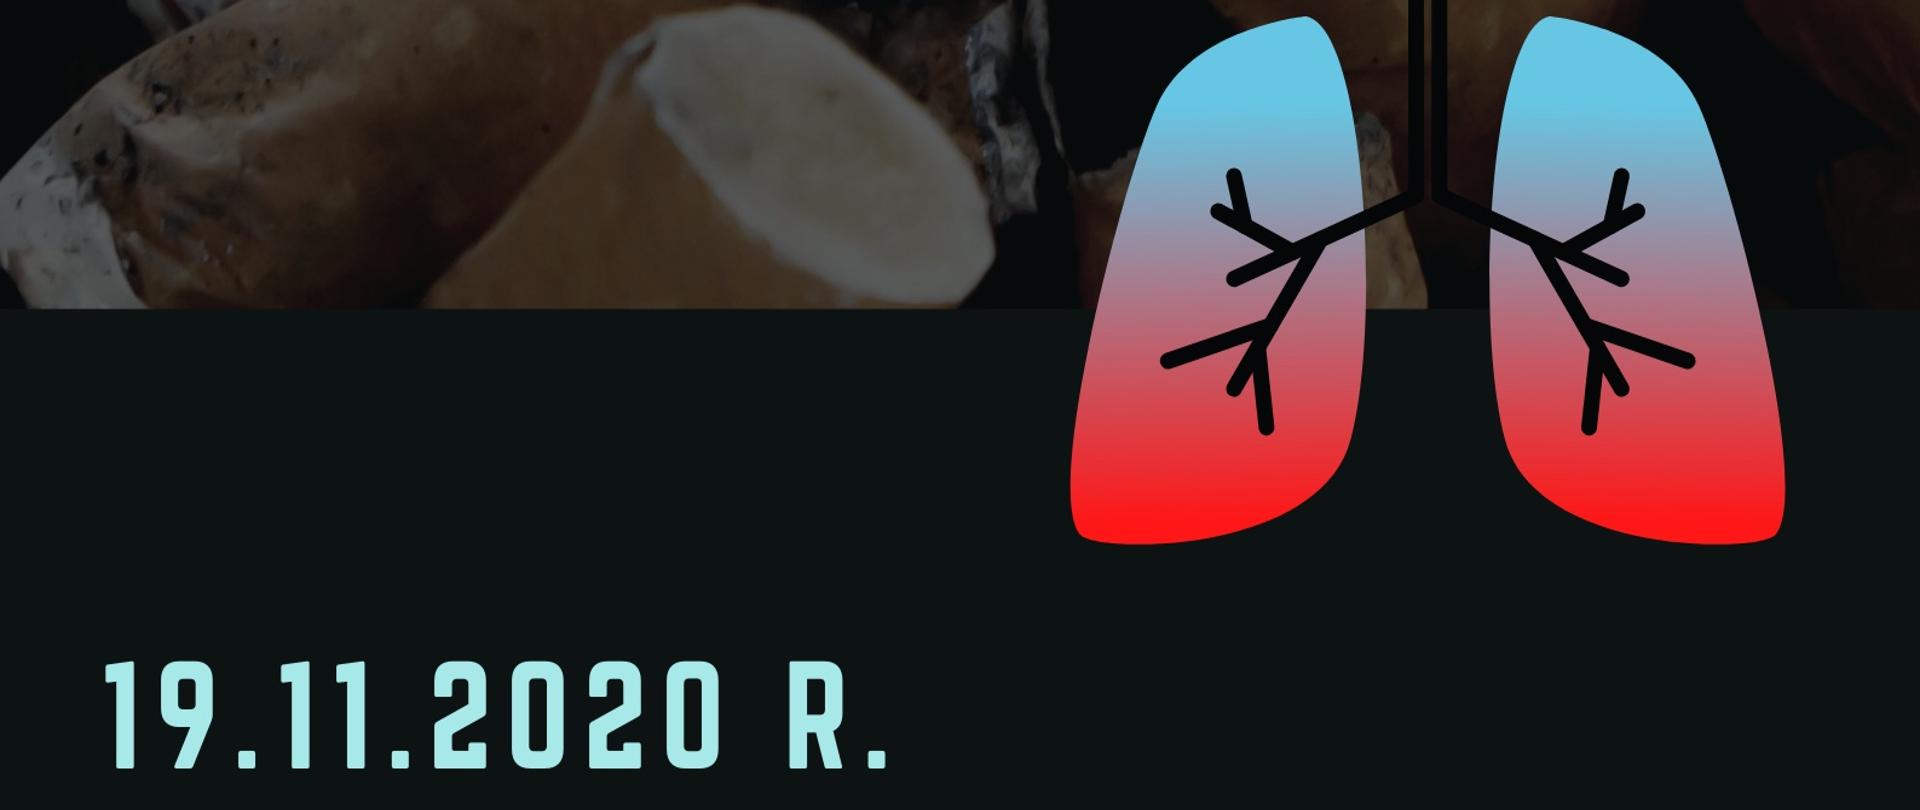 Grafika przedstawia test: Trzeci czwartek listopada - Światowy Dzień Rzucania Palenia, 19.11.2020 r. na tle zgaszonych papierosów. W prawym górnym rogu znajduje się logo Państwowej Inspekcji Sanitarnej. W prawej dolnej części umieszczona jest ilustracja płuc człowieka.